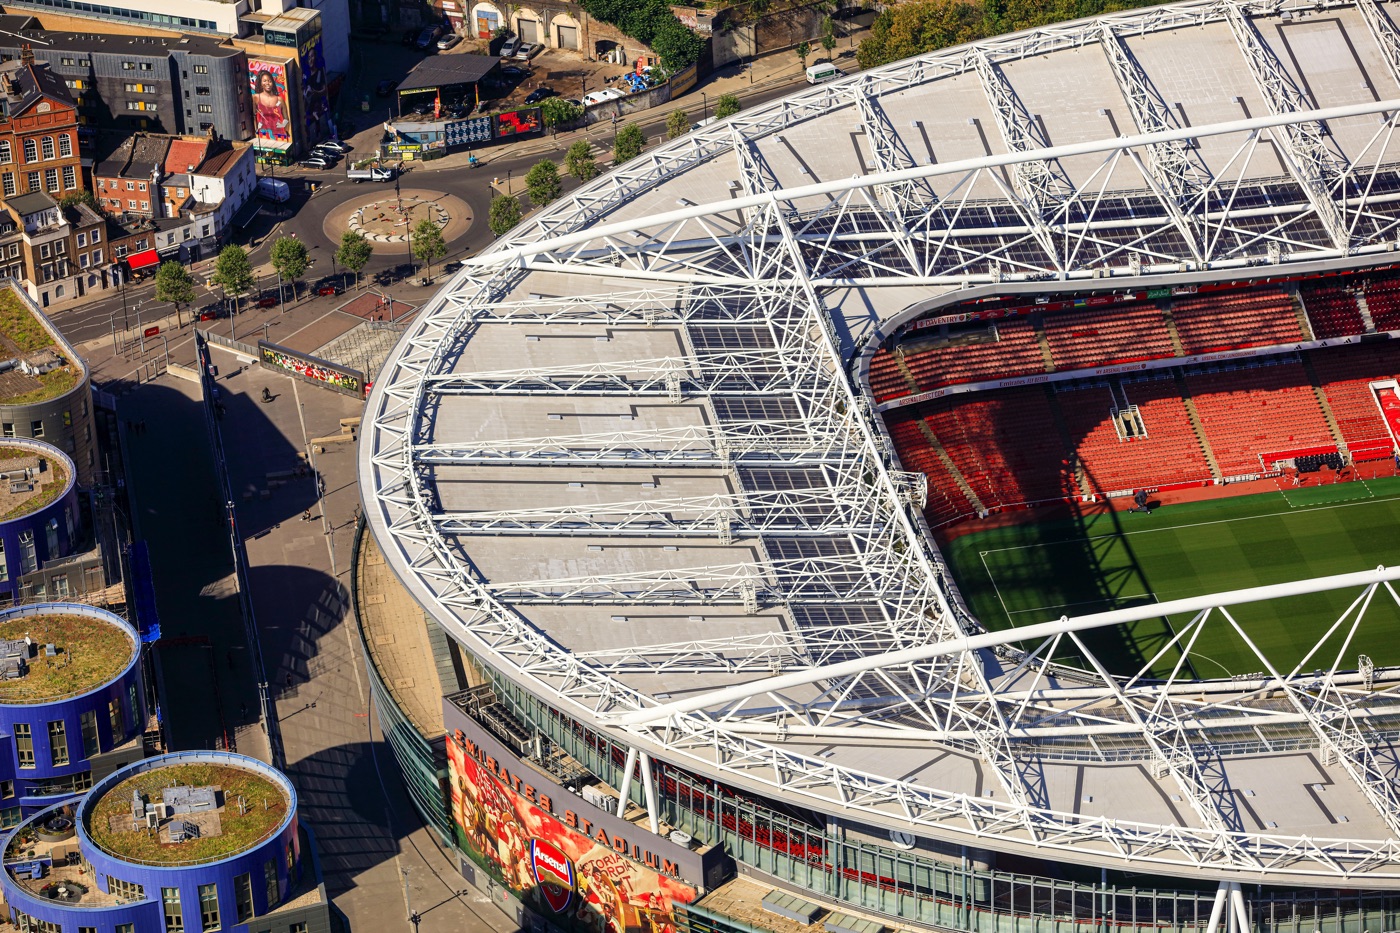 Photo of Emirates Stadium, project by TSL.